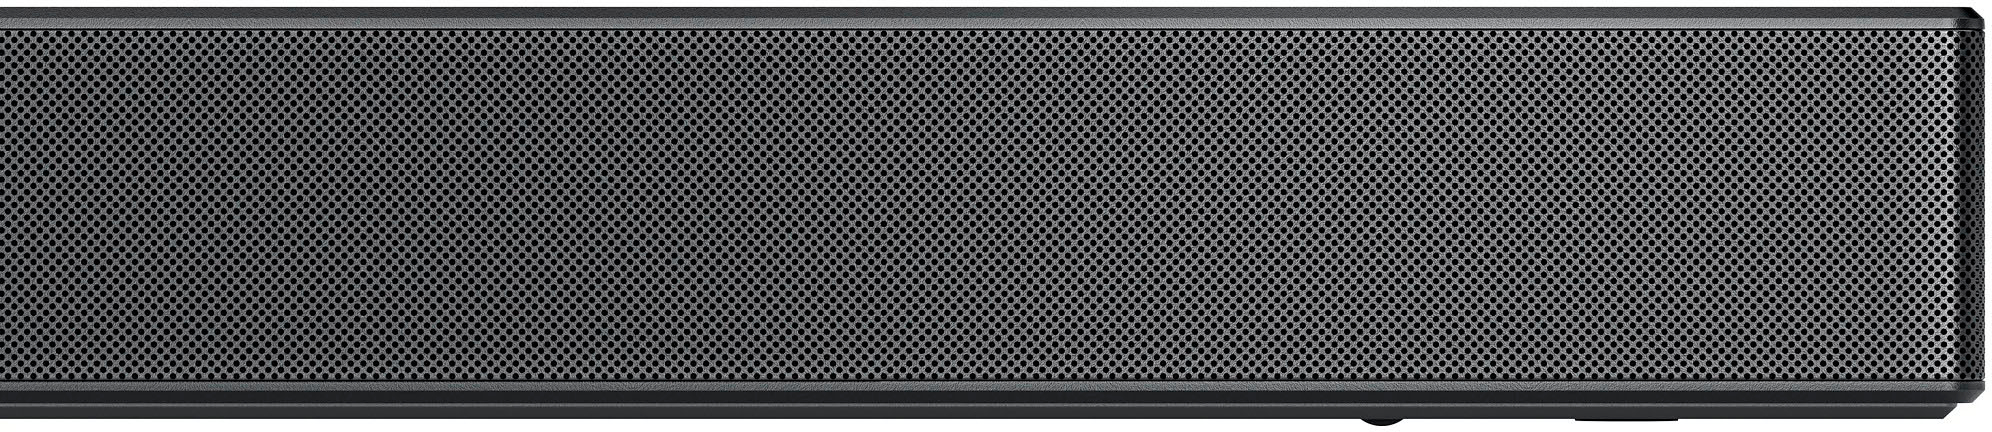 5.1.2 ch High Res Audio Soundbar - S75QR